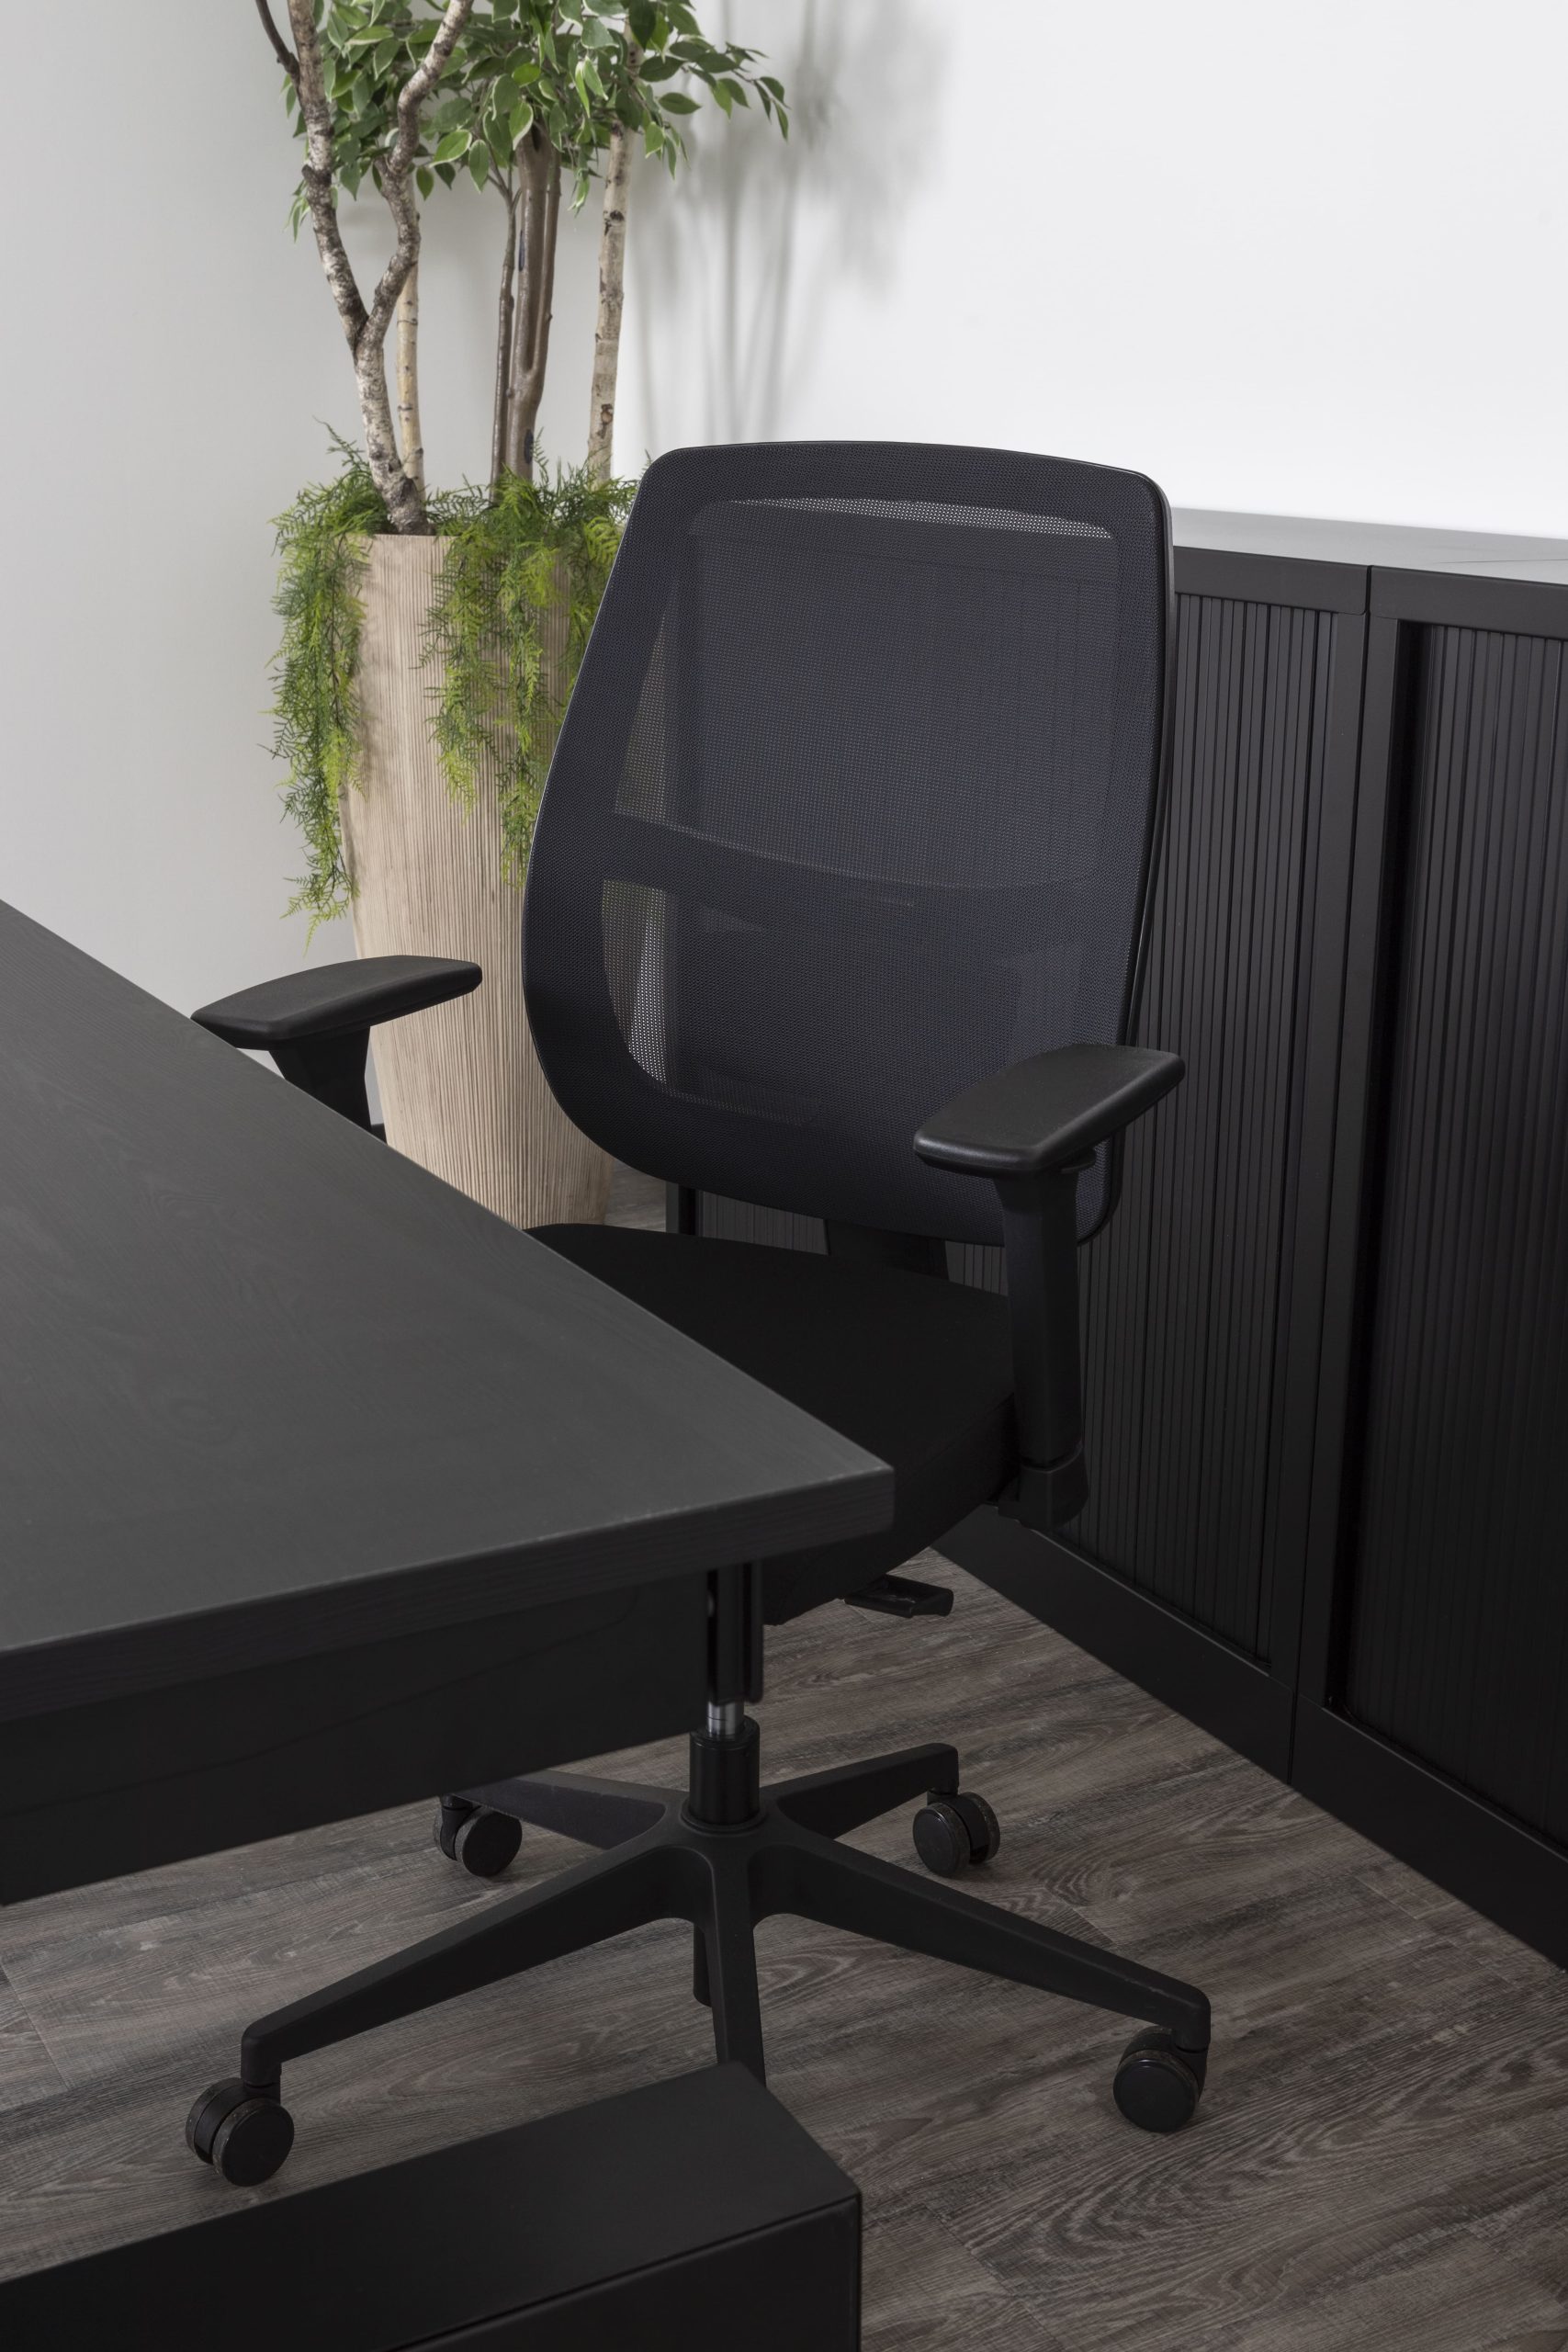 zwarte bureaustoel in een kantoorsetting